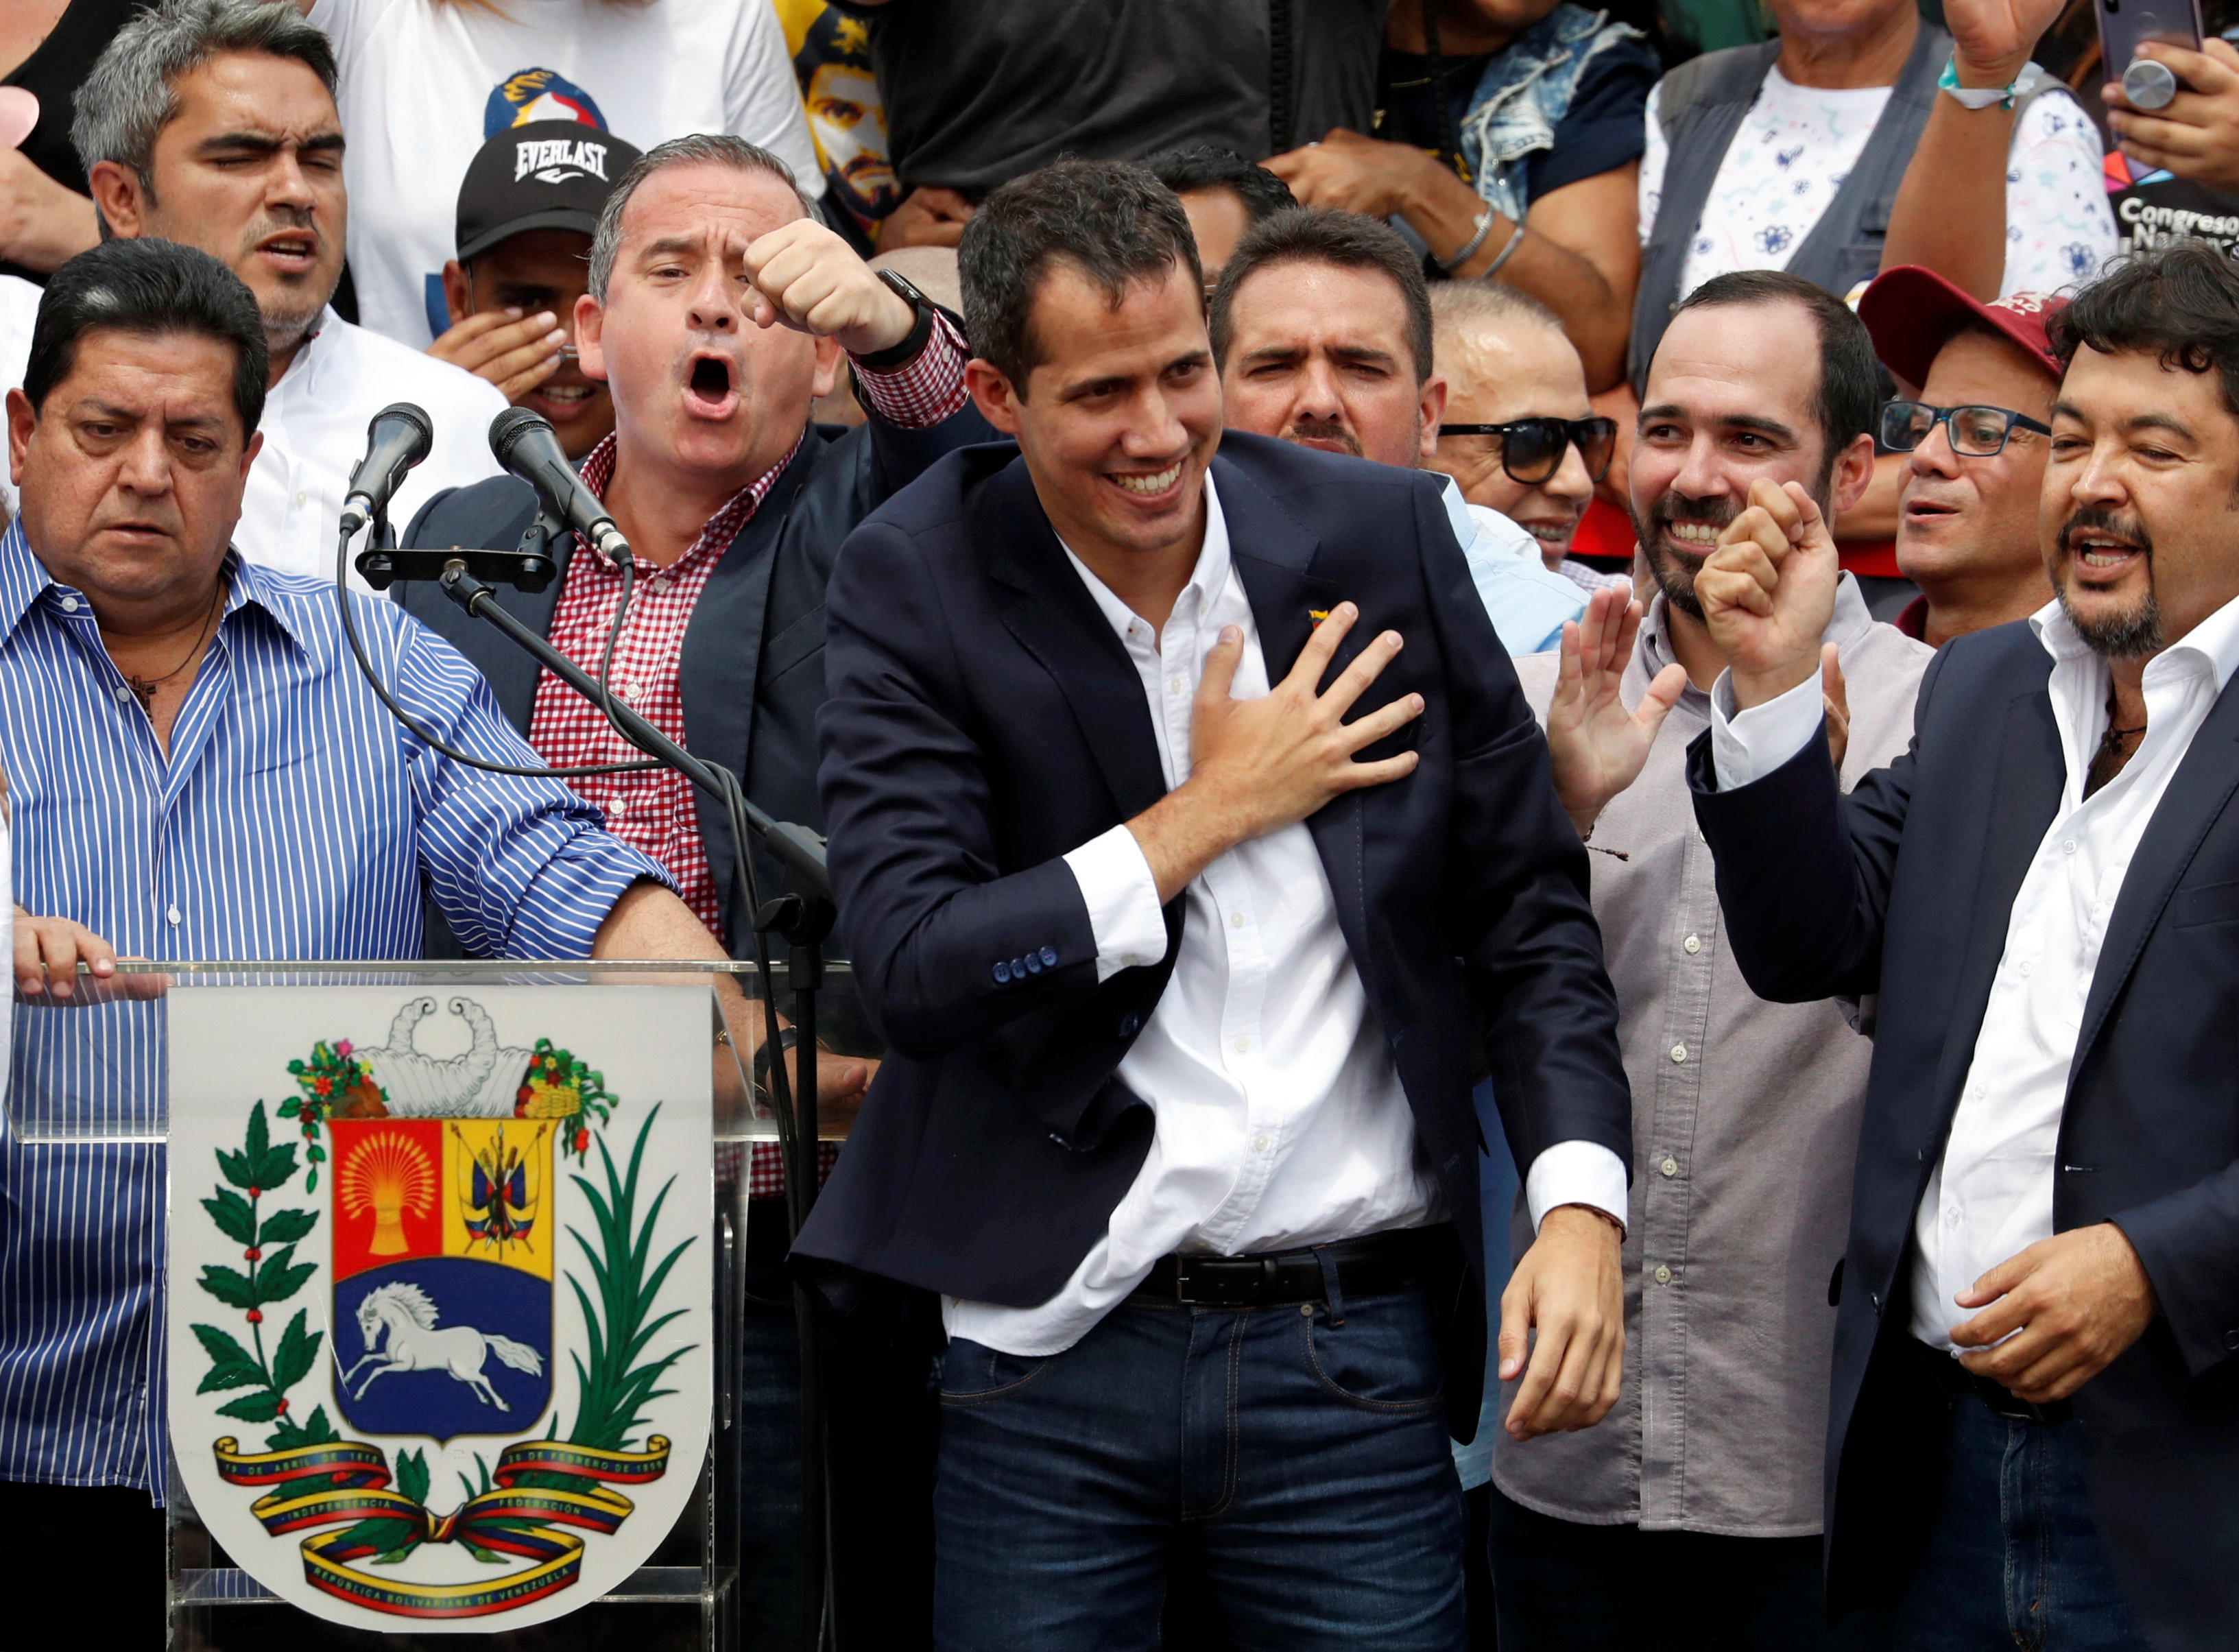 Datanálisis: 77% de los venezolanos votaría por Guaidó en unas elecciones libres